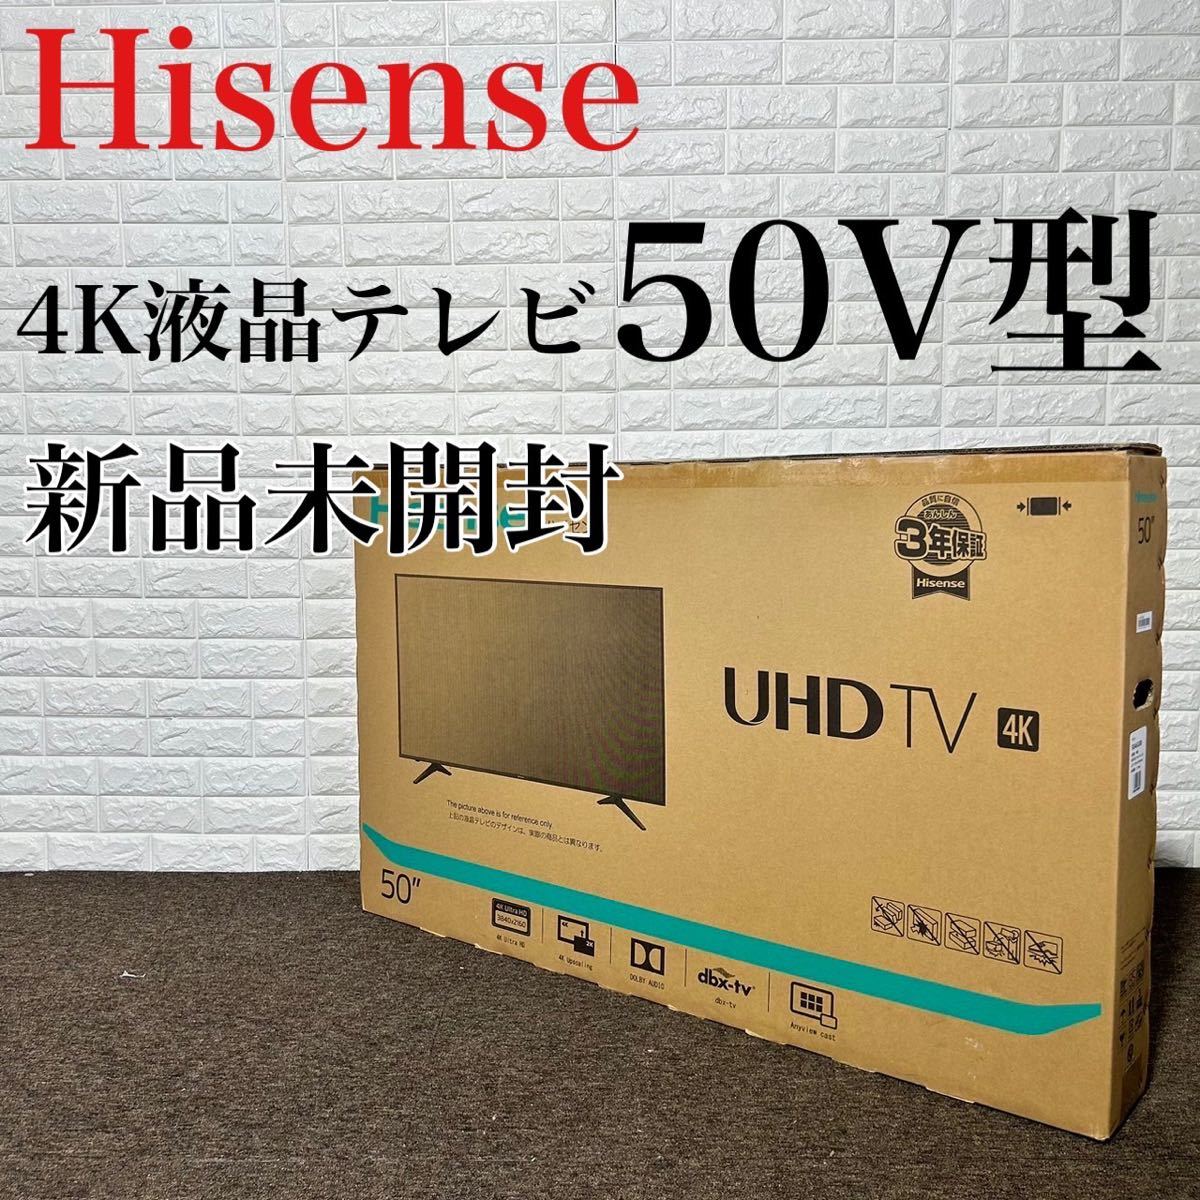 人気ブラドン 50A6100 液晶テレビ Hisense 新品未開封 高年式 k0133